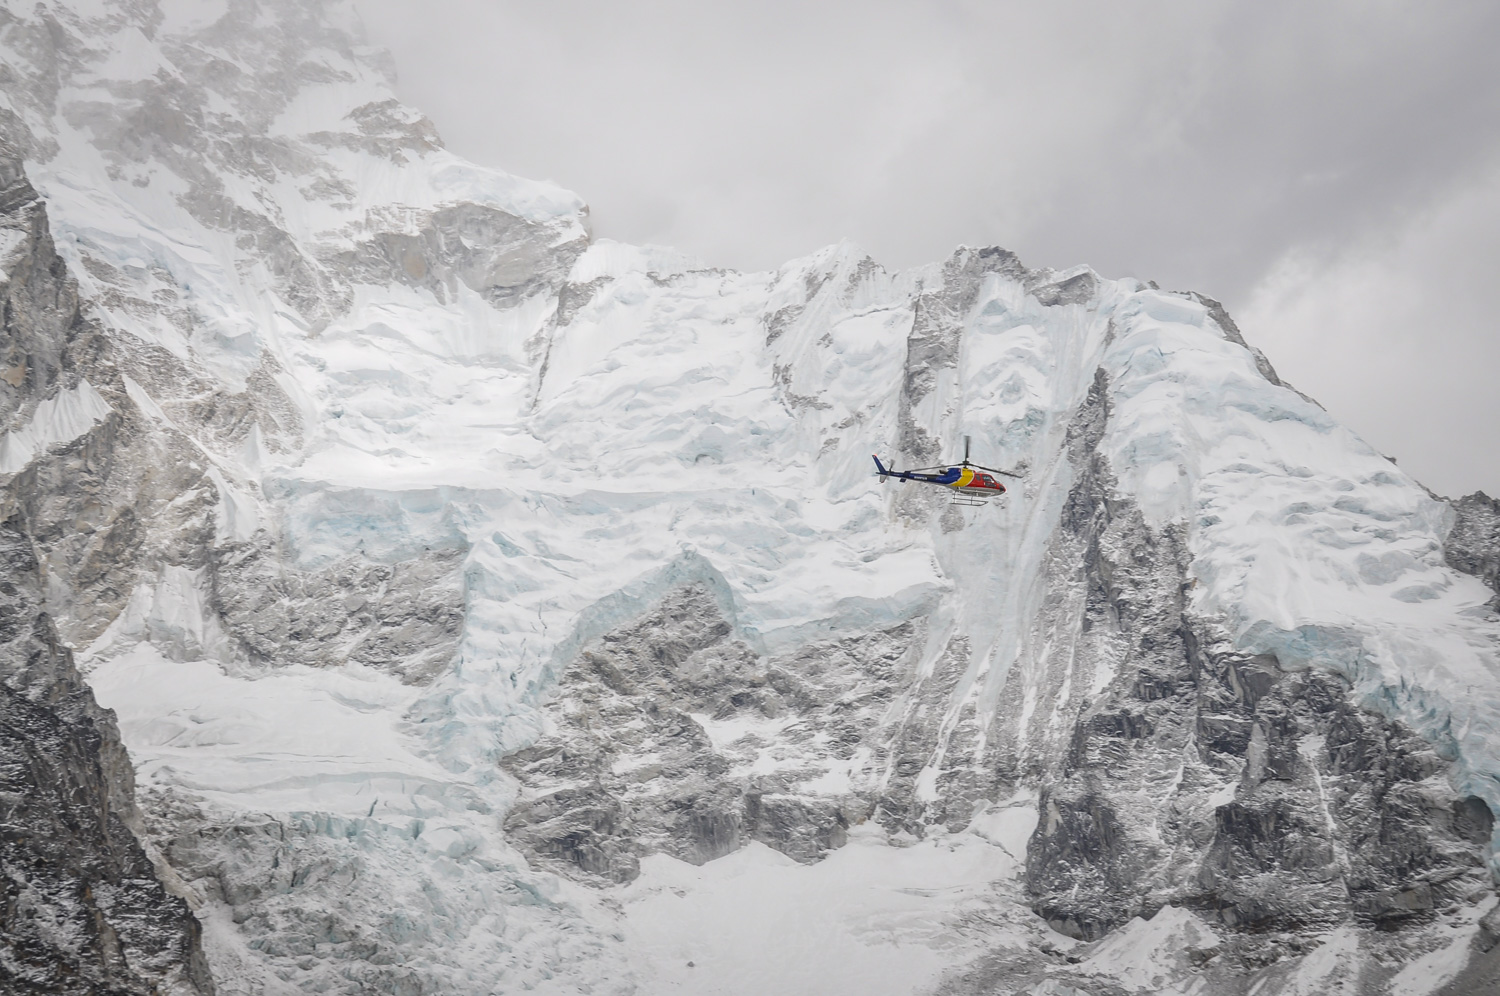 在尼泊尔风景秀丽的珠穆朗玛峰直升机飞行要做的事情